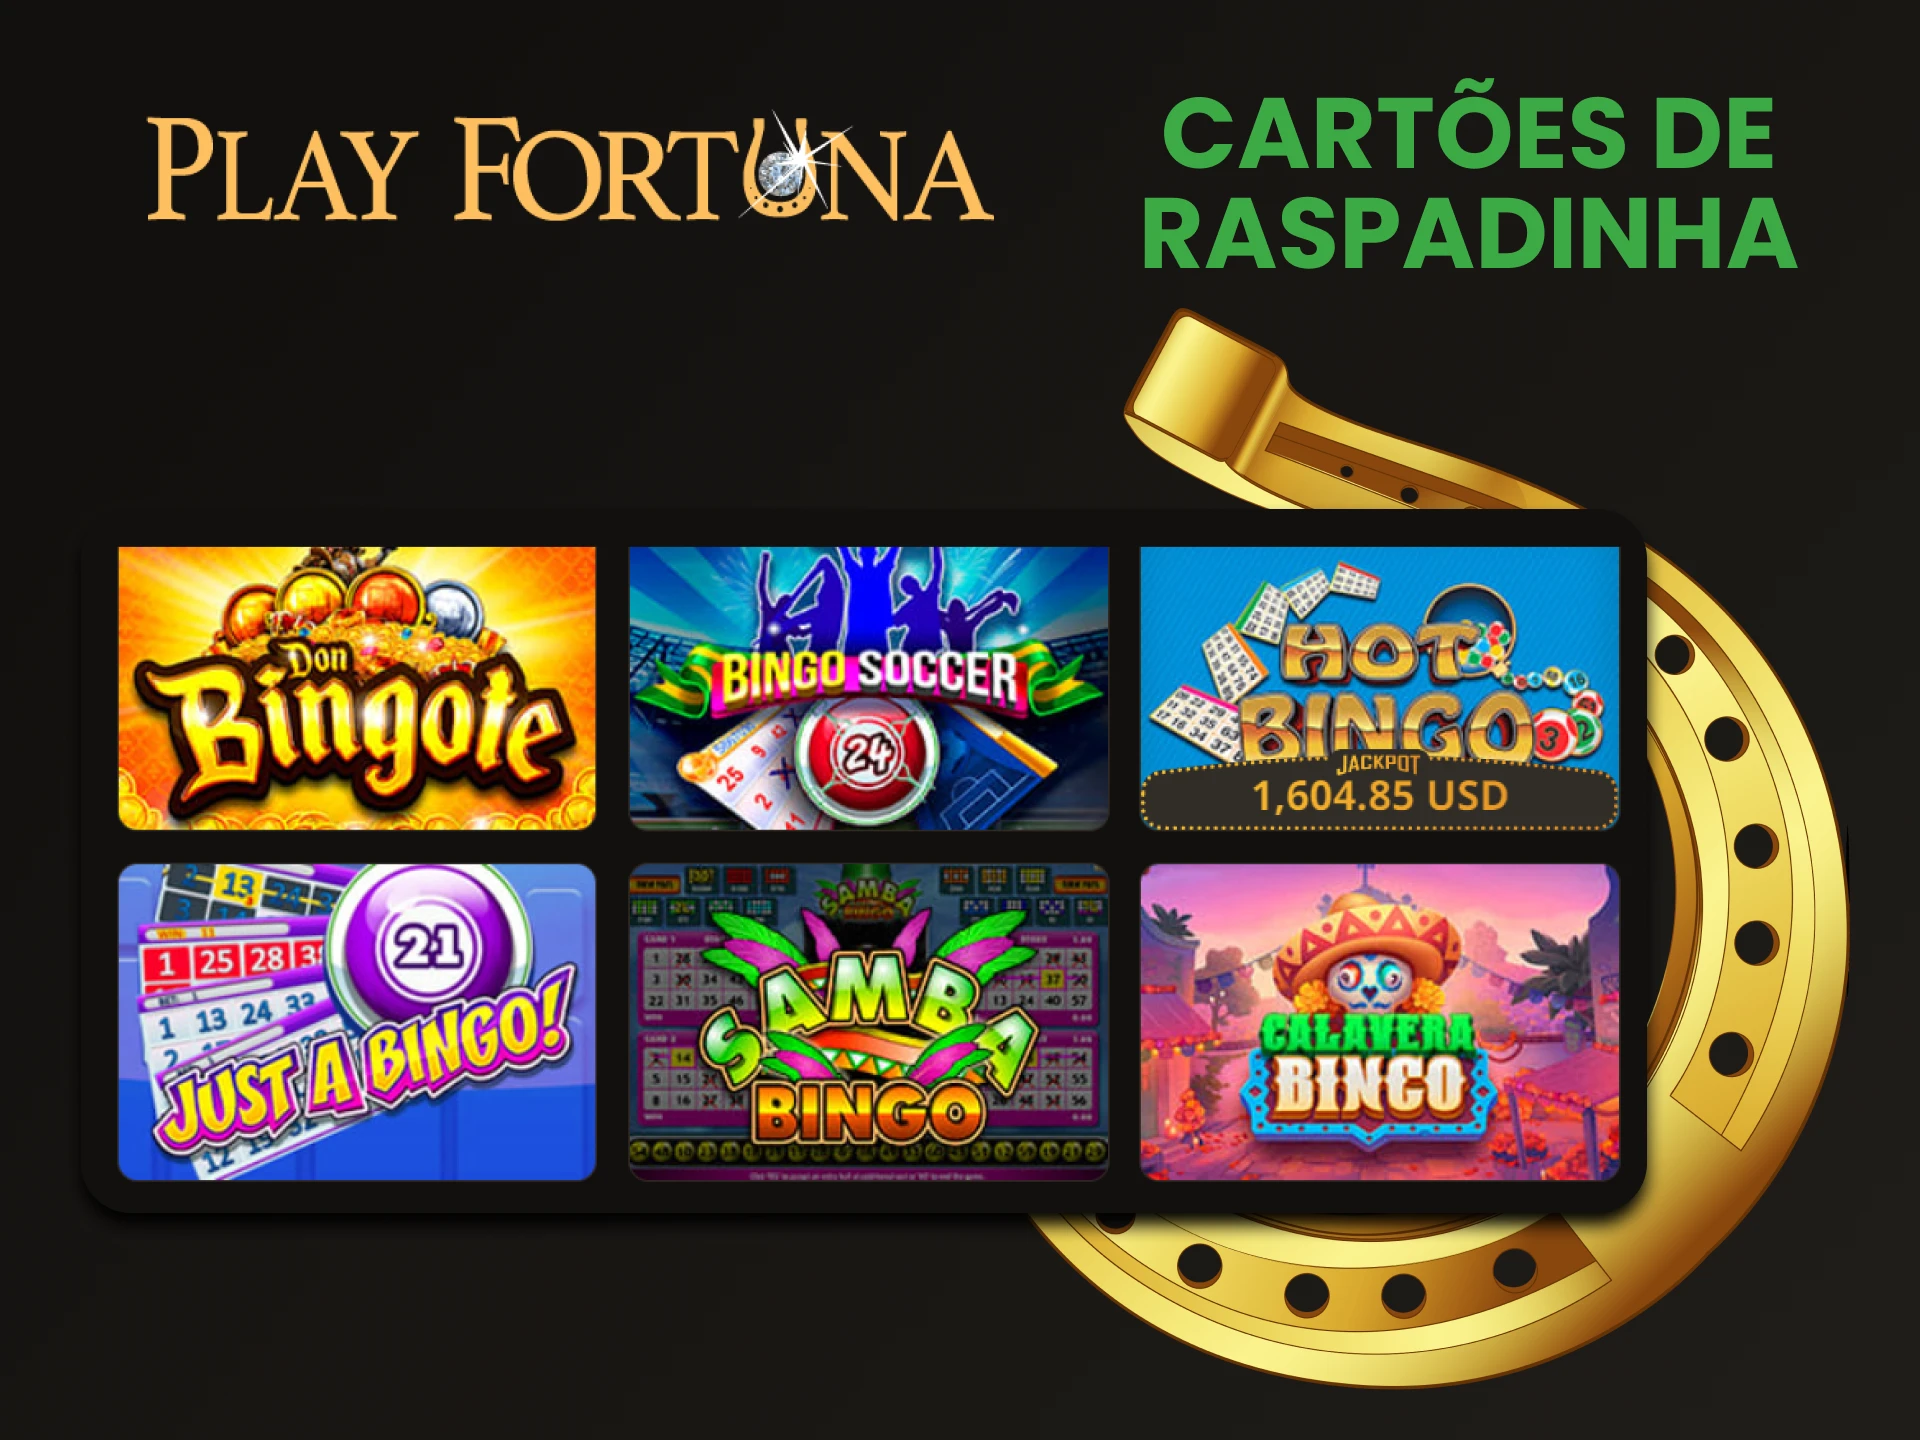 Para jogos de tabuleiro no Play Fortuna, escolha Cartoes de Raspadinha.